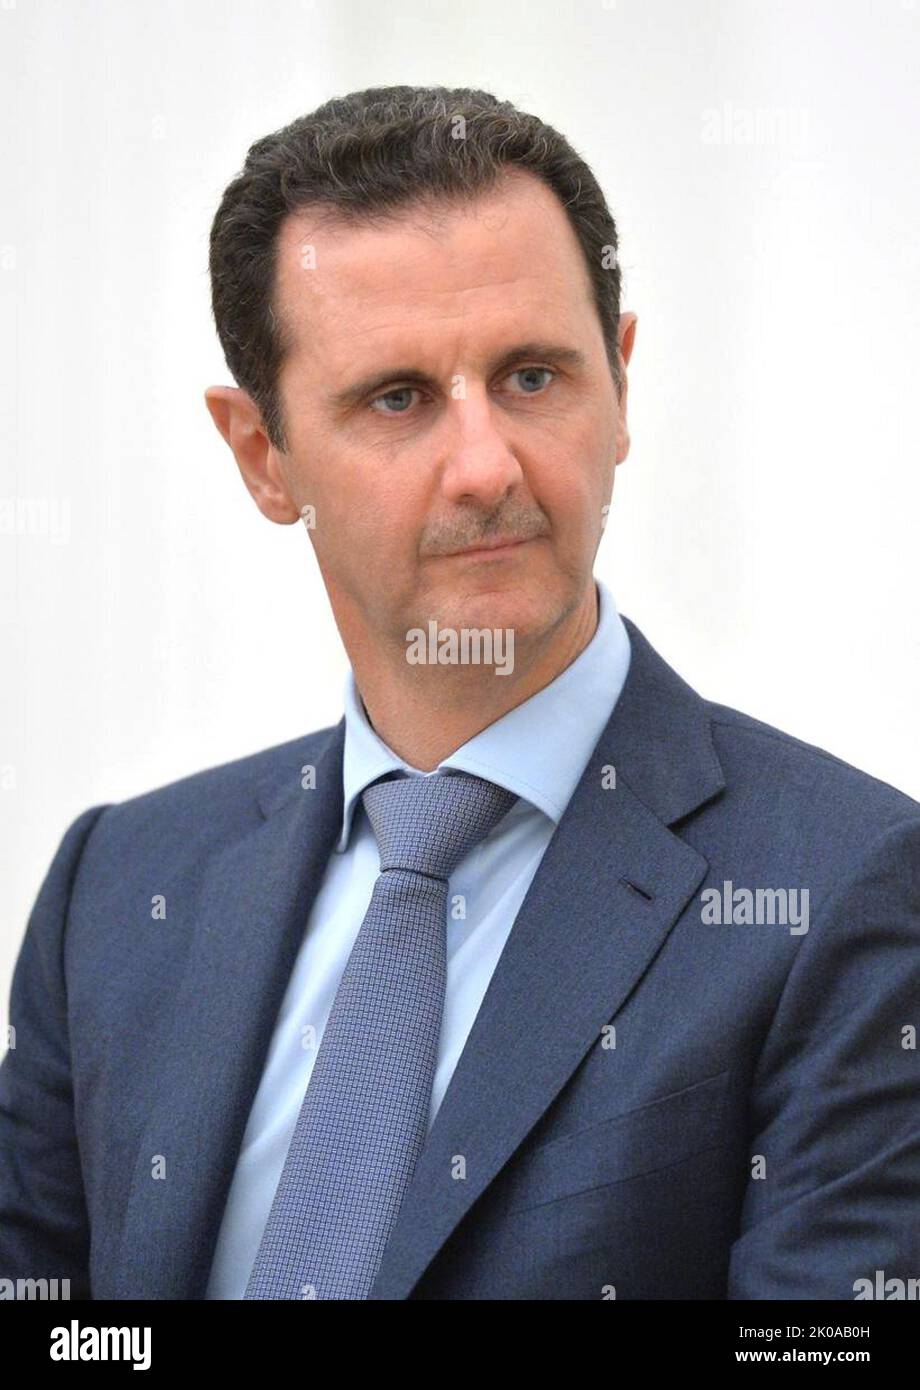 Bashar al-Assad (nato il 11 settembre 1965) politico siriano; presidente della Siria, dal 2000. Inoltre, è il comandante in capo delle forze armate siriane e il Segretario generale del comando centrale del Partito socialista arabo Ba'ath. Suo padre, Hafez al-Assad, era il presidente della Siria davanti a lui, in servizio dal 1971 al 2000 Foto Stock